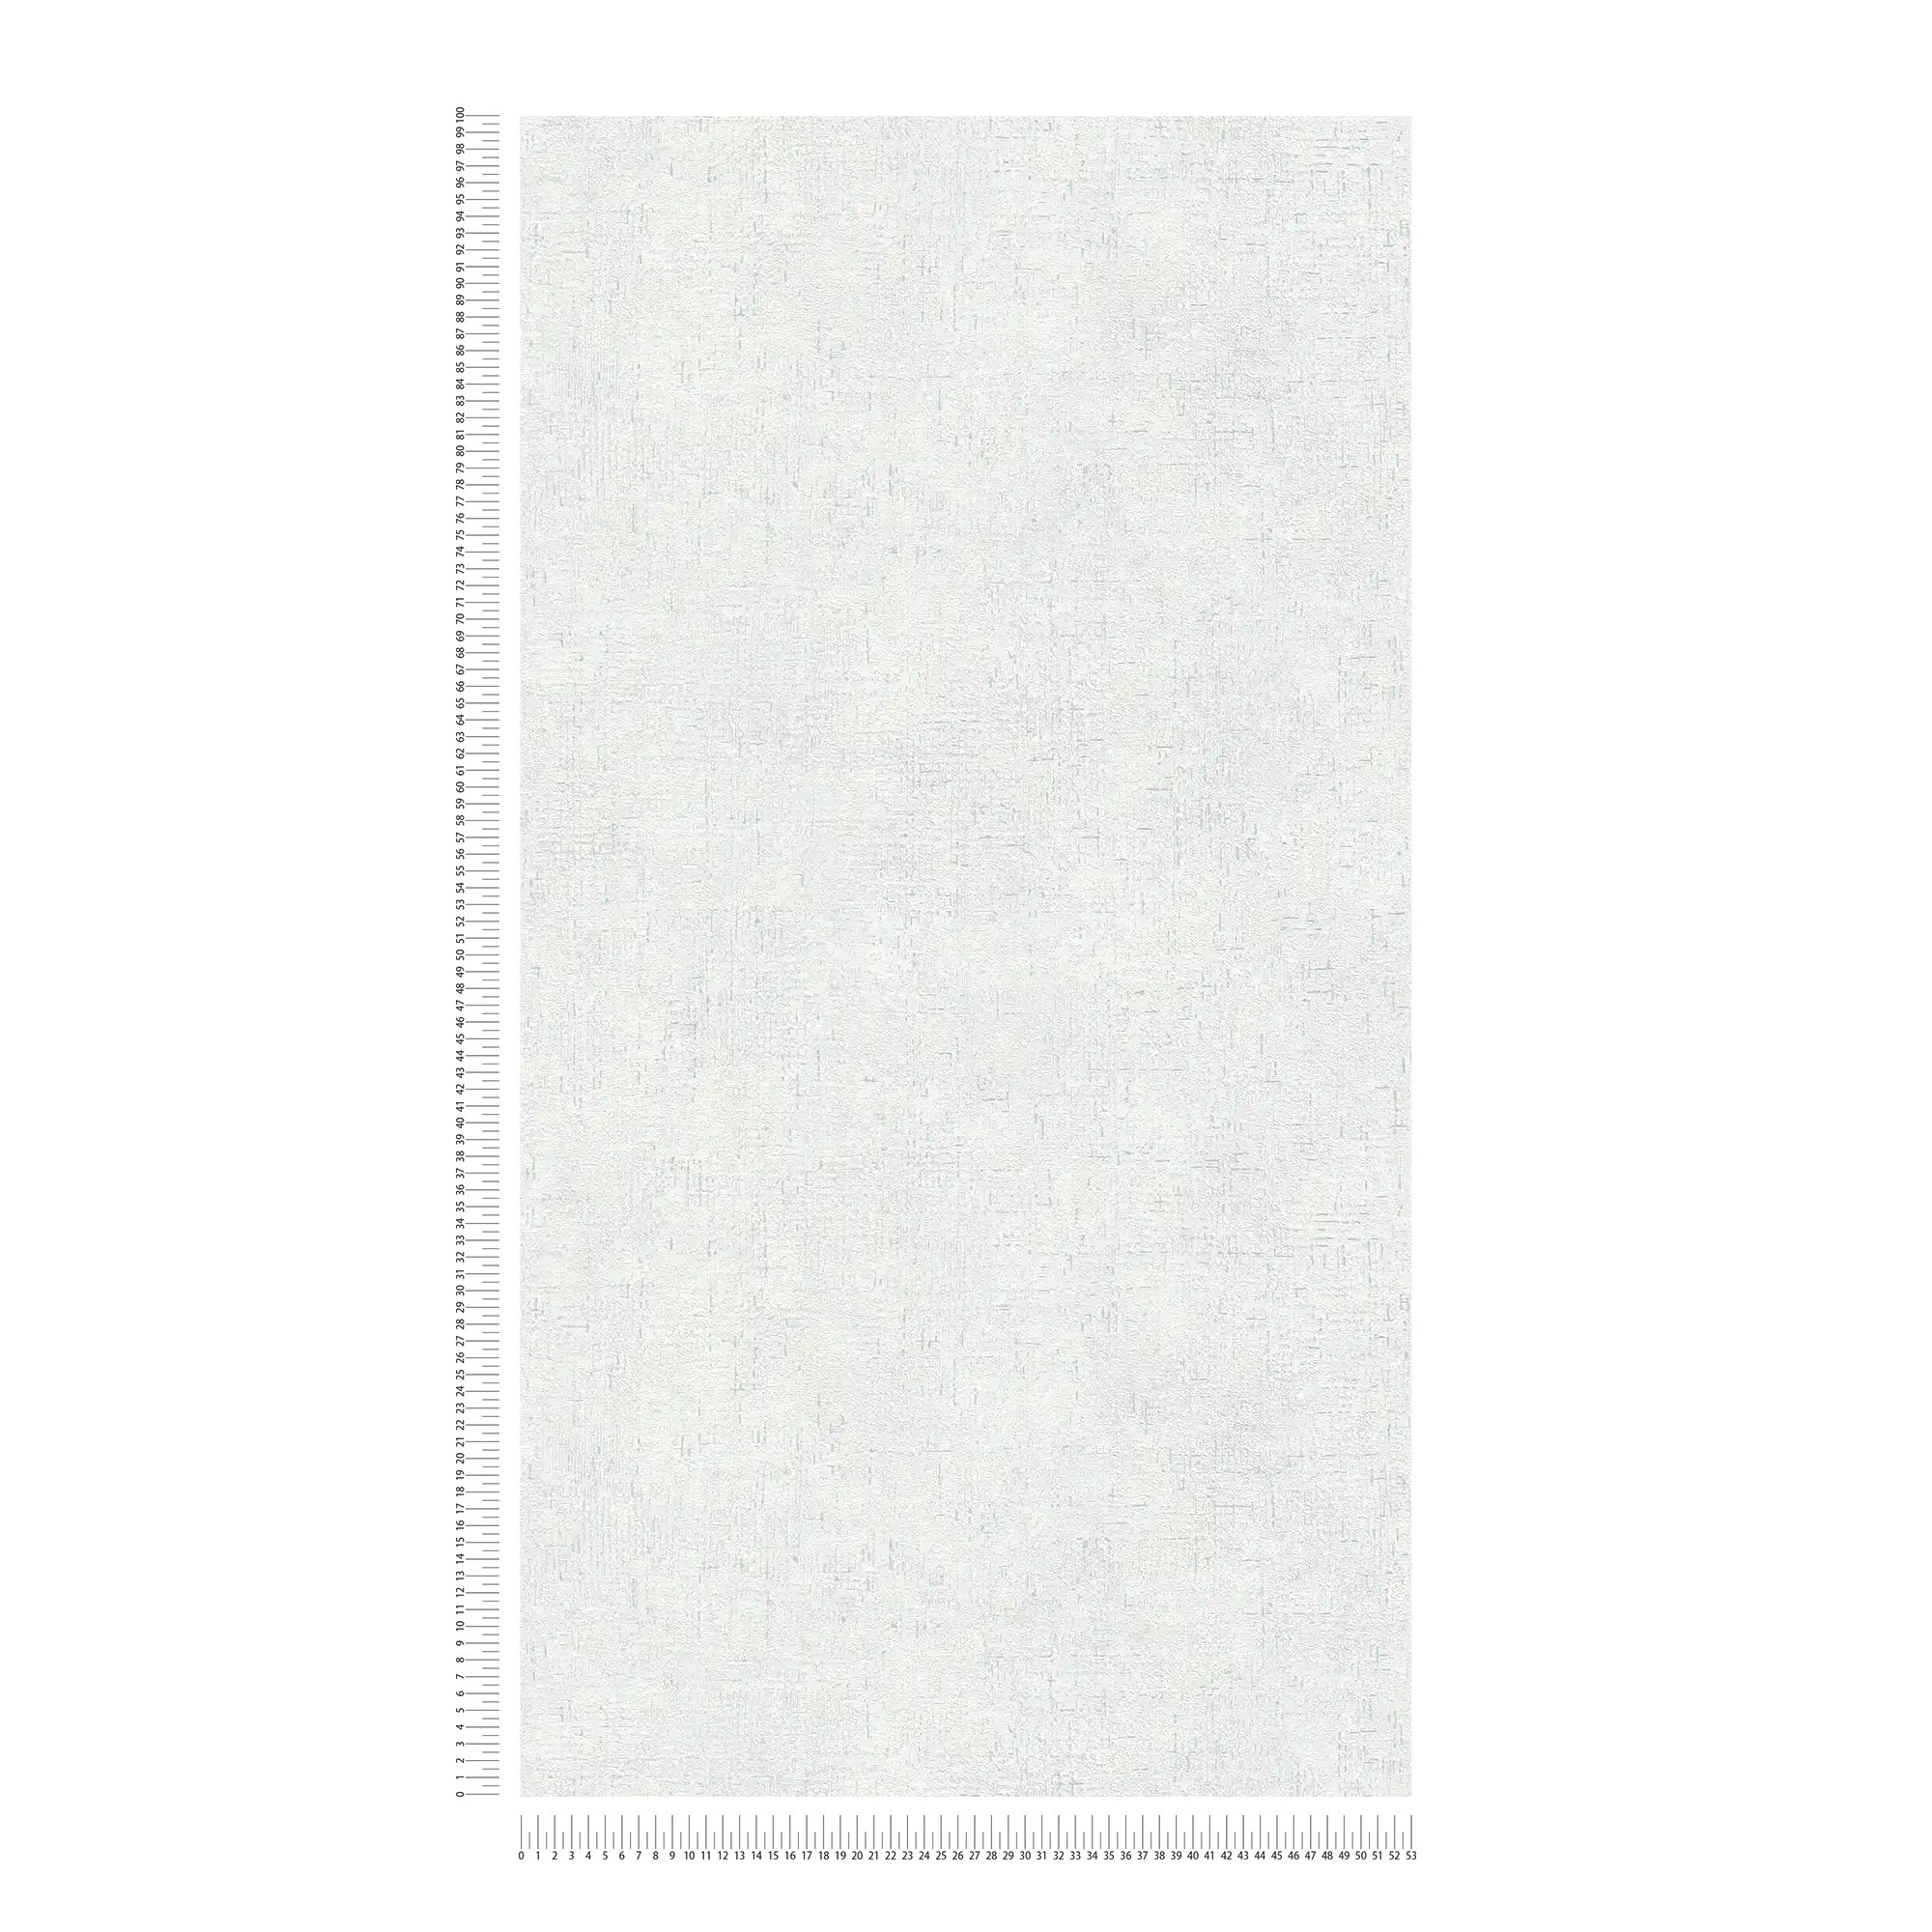             Carta da parati in tessuto non tessuto grigio-bianco con design a struttura rustica ed effetto opaco-lucido
        